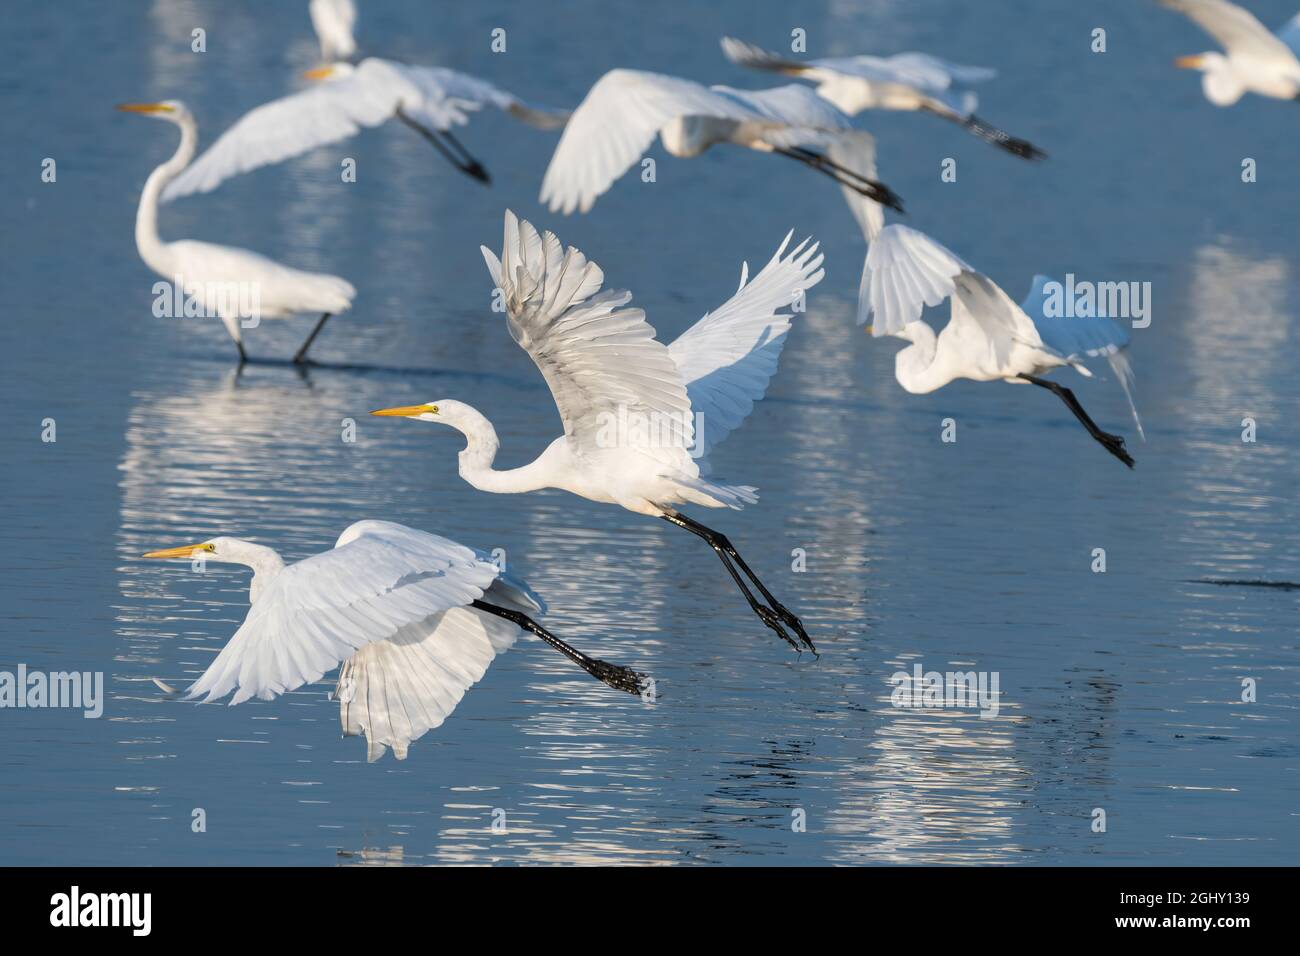 Eine Schar eleganter Weißreiher, die ihre mächtigen Flügel benutzen, um an einem sonnigen Morgen aus dem seichten Wasser eines Sees zu fliegen. Stockfoto